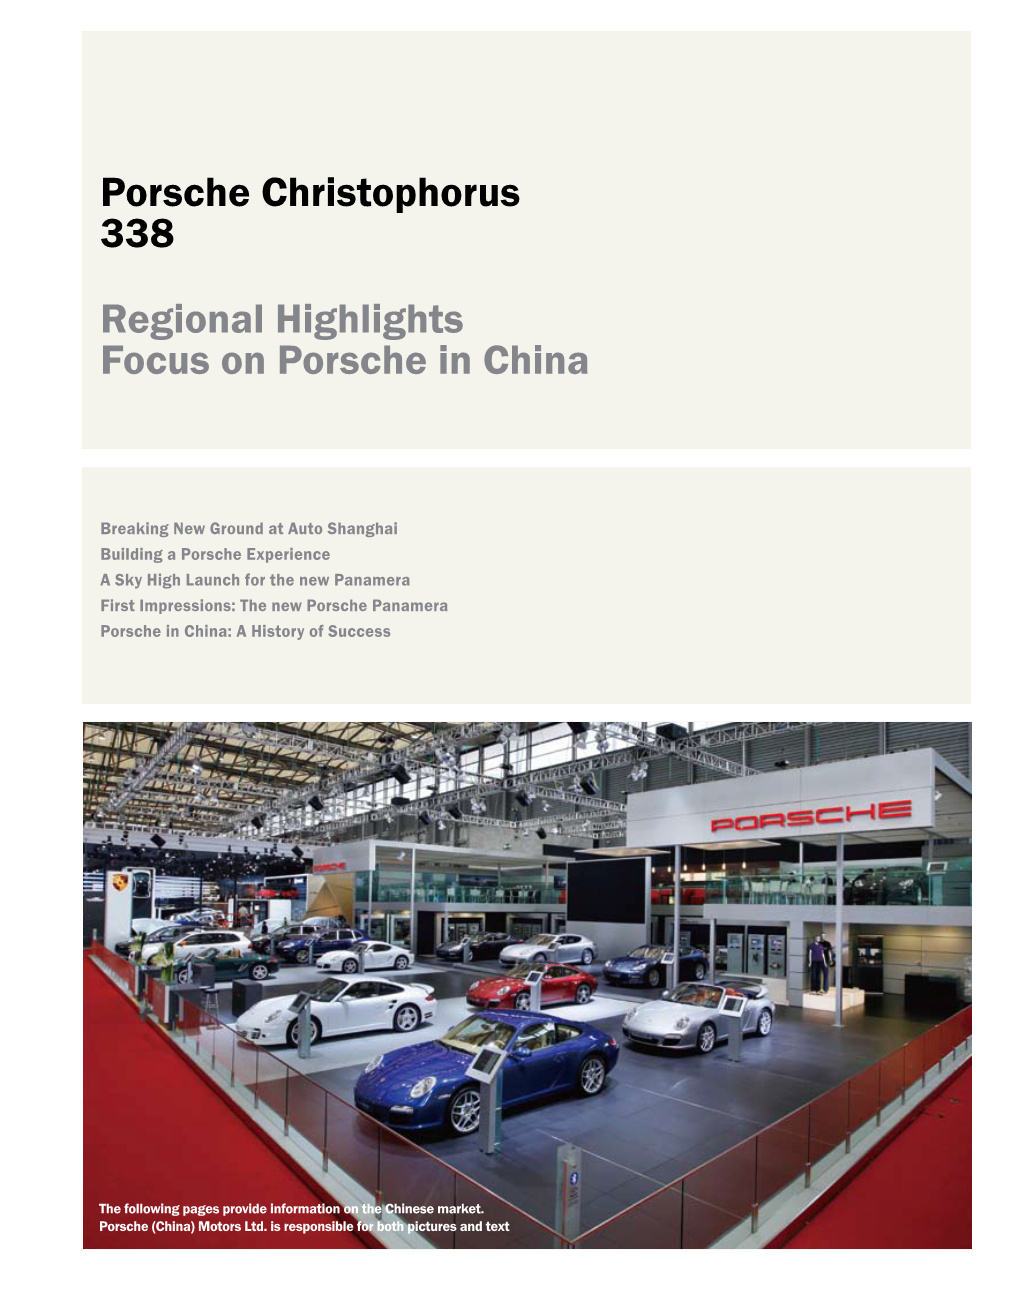 Porsche Christophorus 338 Regional Highlights Focus on Porsche in China